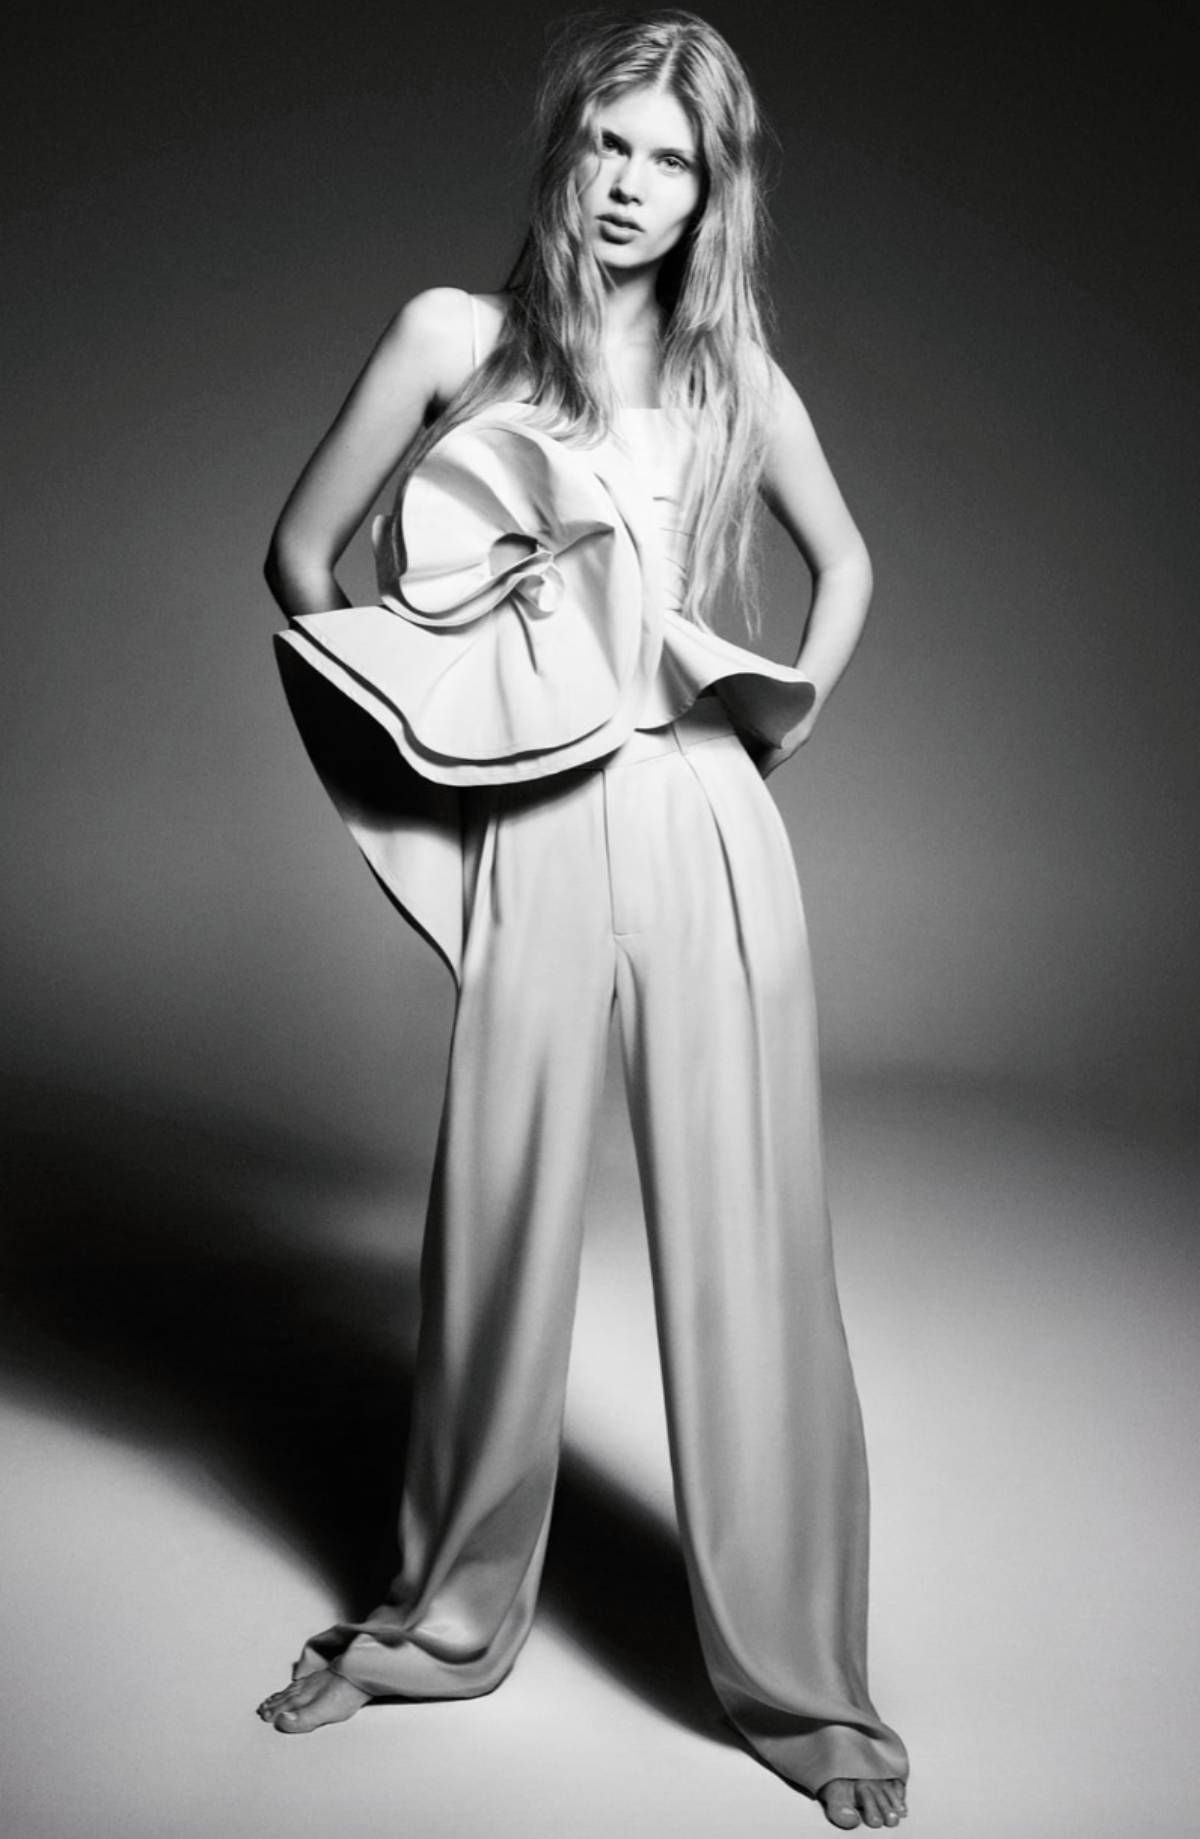 Zara lanza una edición limitada de vestidos, tops y faldas que es un sueño  - Woman